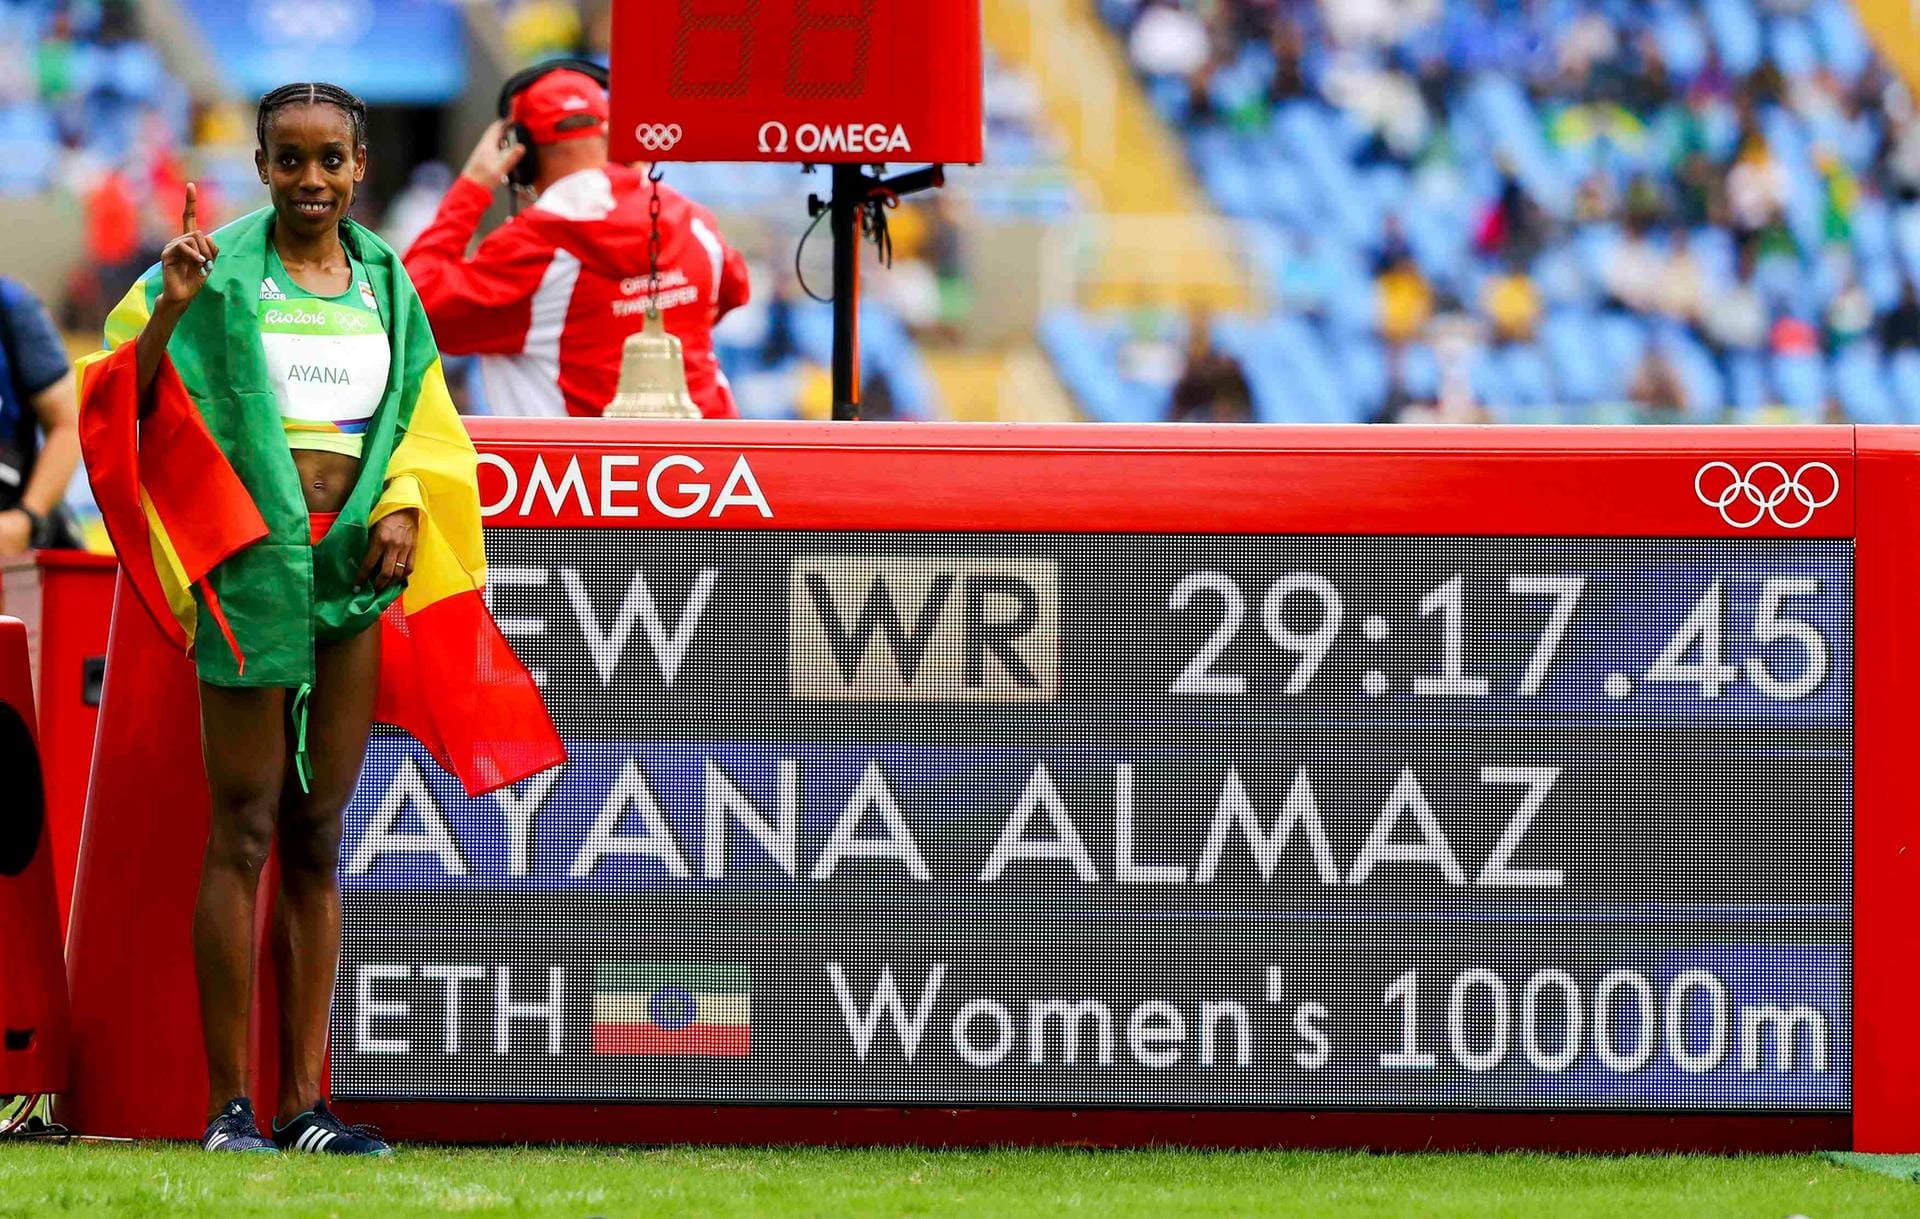 Wahnsinns-Weltrekord beim 10.000-Meter-Lauf: Die 25-jährige Almaz Ayana aus Äthiopien pulverisiert in 29:17,45 Minuten die alte Bestmarke der Chinesin Wang Junxia (29:31,78) von 1993 und gewinnt Gold. Ayana lief wie von einem anderen Stern, marschierte fast die Hälfte der Distanz alleine vorneweg.